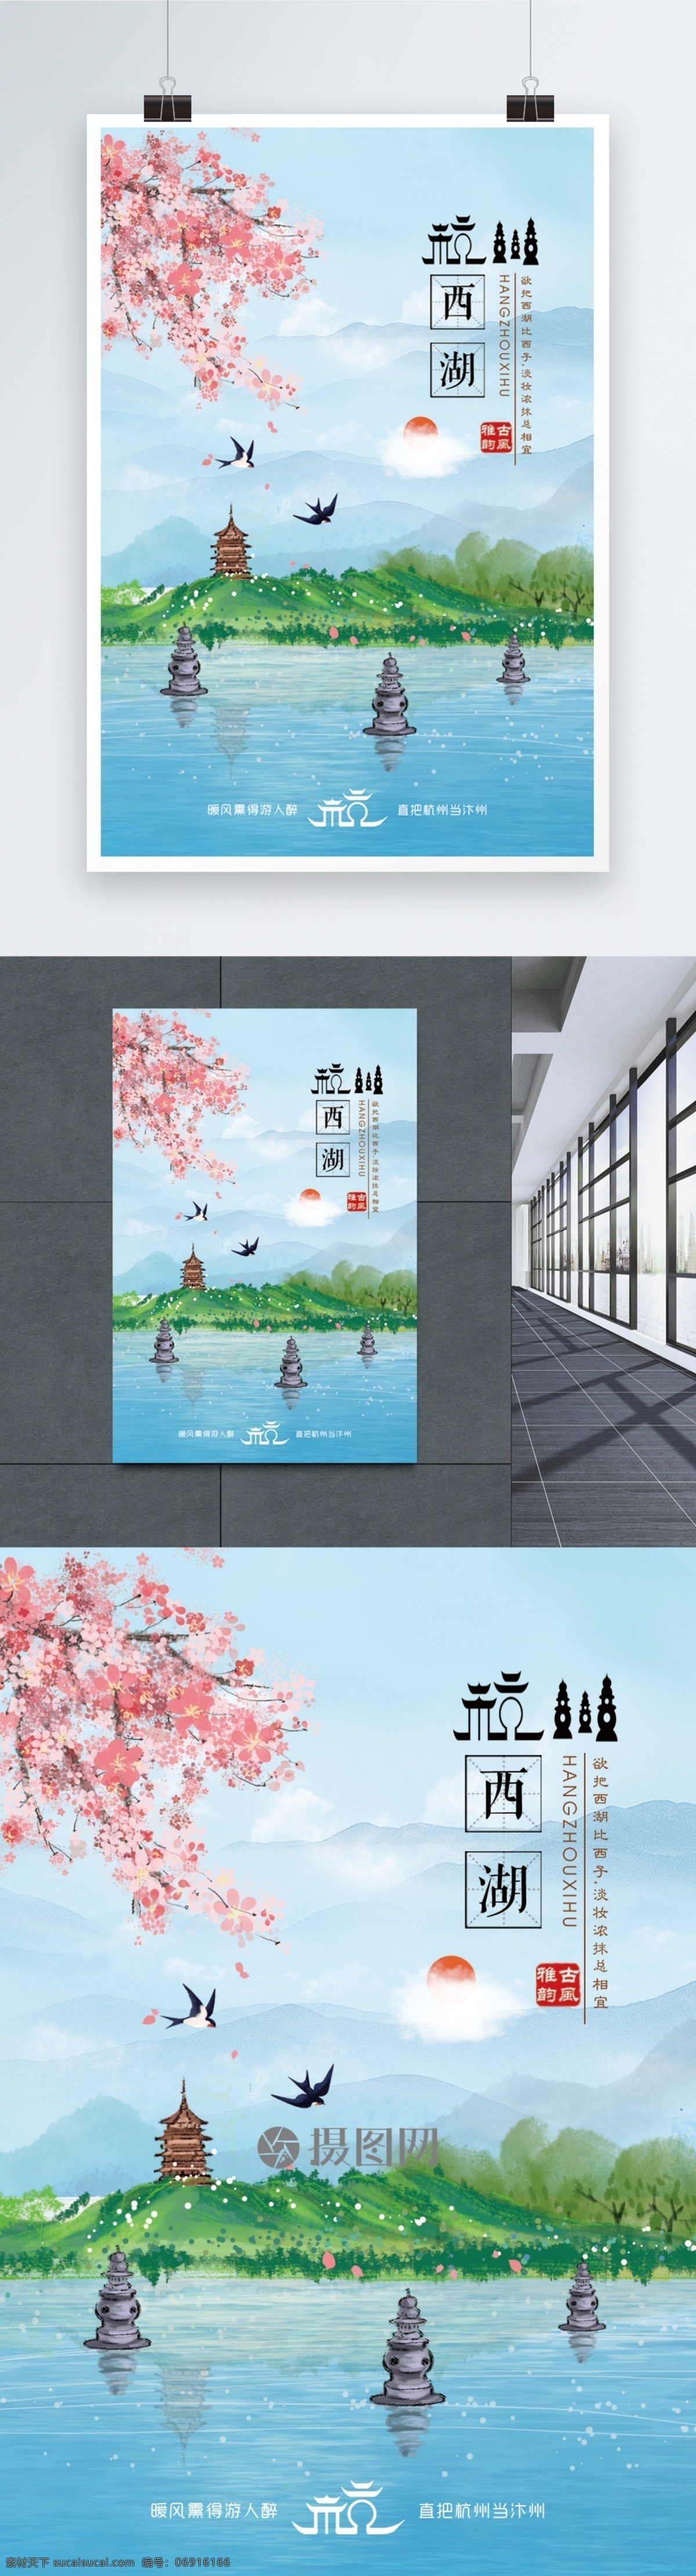 杭州西湖 旅游 海报 旅行 风景 杭州 西湖 旅游设计海报 花草 山水 树